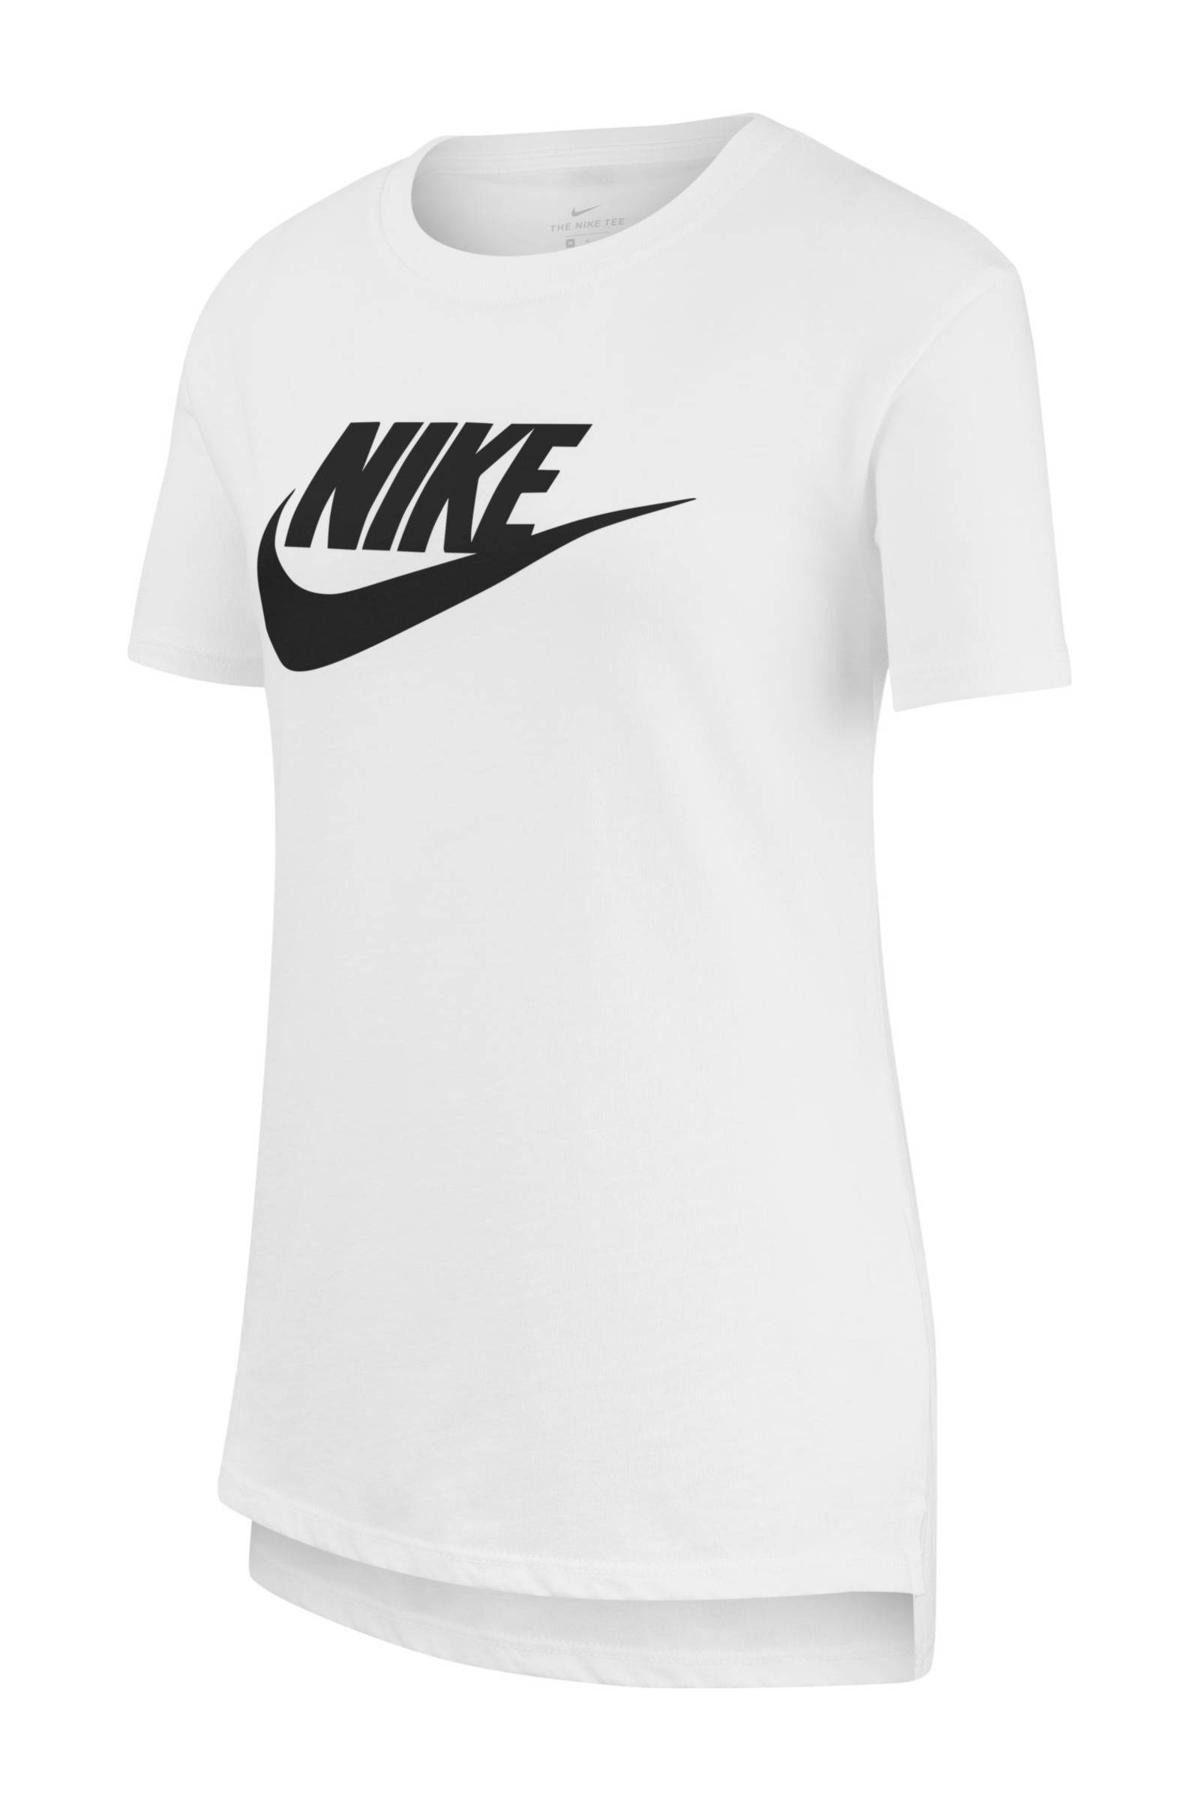 Arabische Sarabo pepermunt Product Nike T-shirt wit/zwart kopen? | Morgen in huis | wehkamp